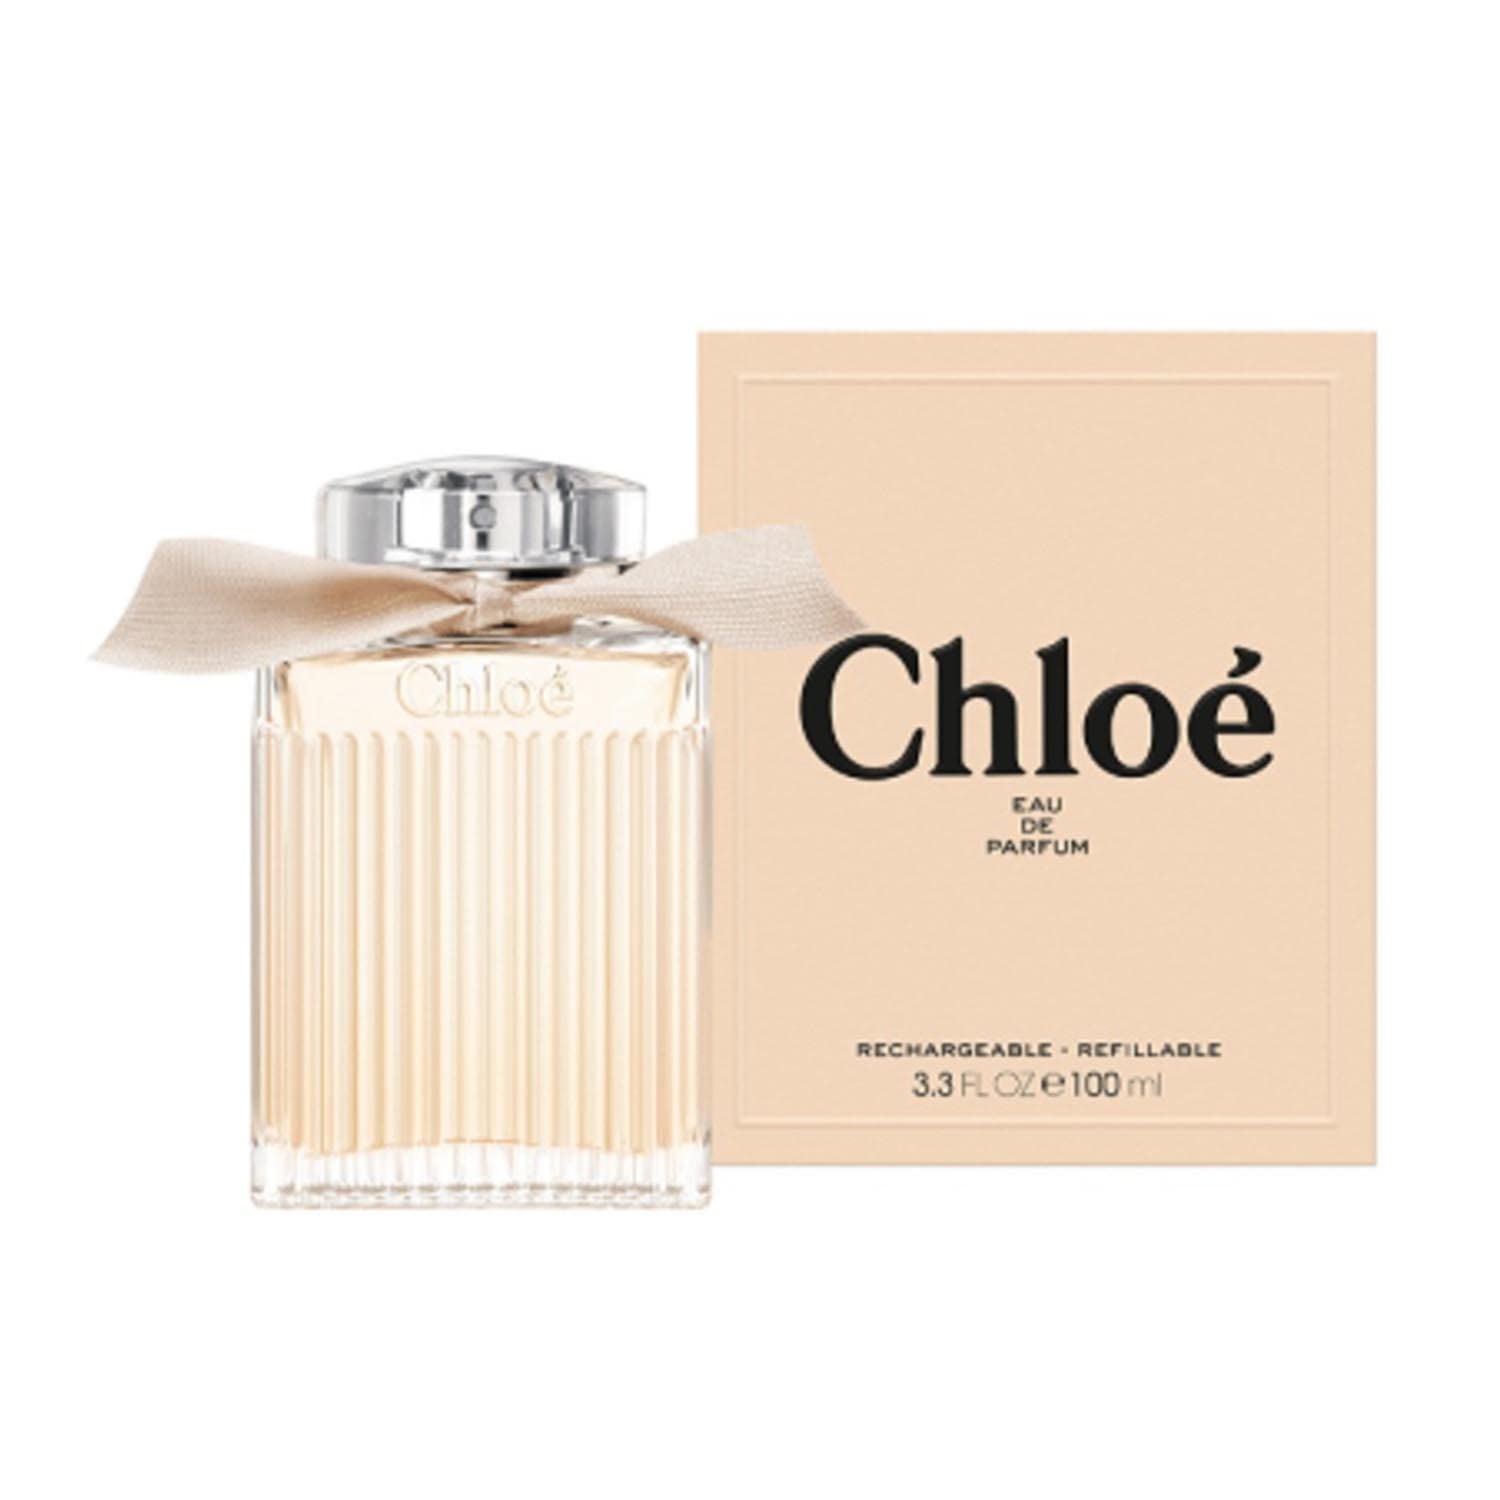 Chloé Signature Eau de Parfum recargable 100 ml